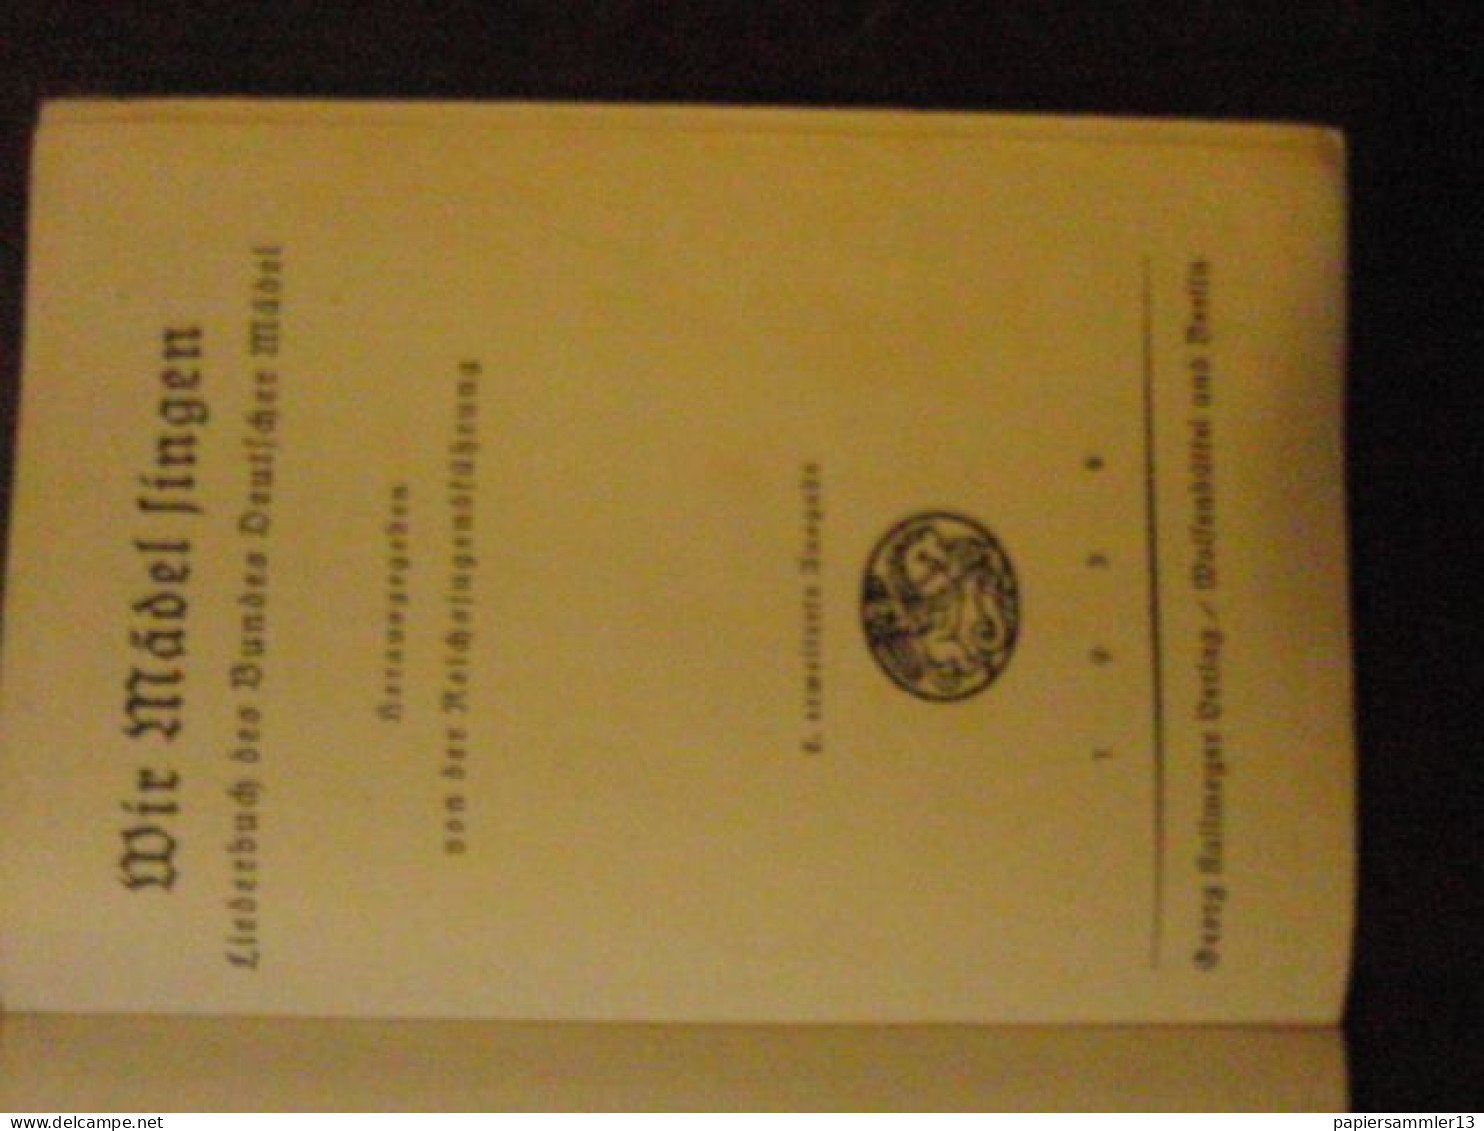 BDM Wir Mädel Singen Liederbuch Des Bundes Deutscher Mädel, 2.Aufl. 1938 - Contemporary Politics